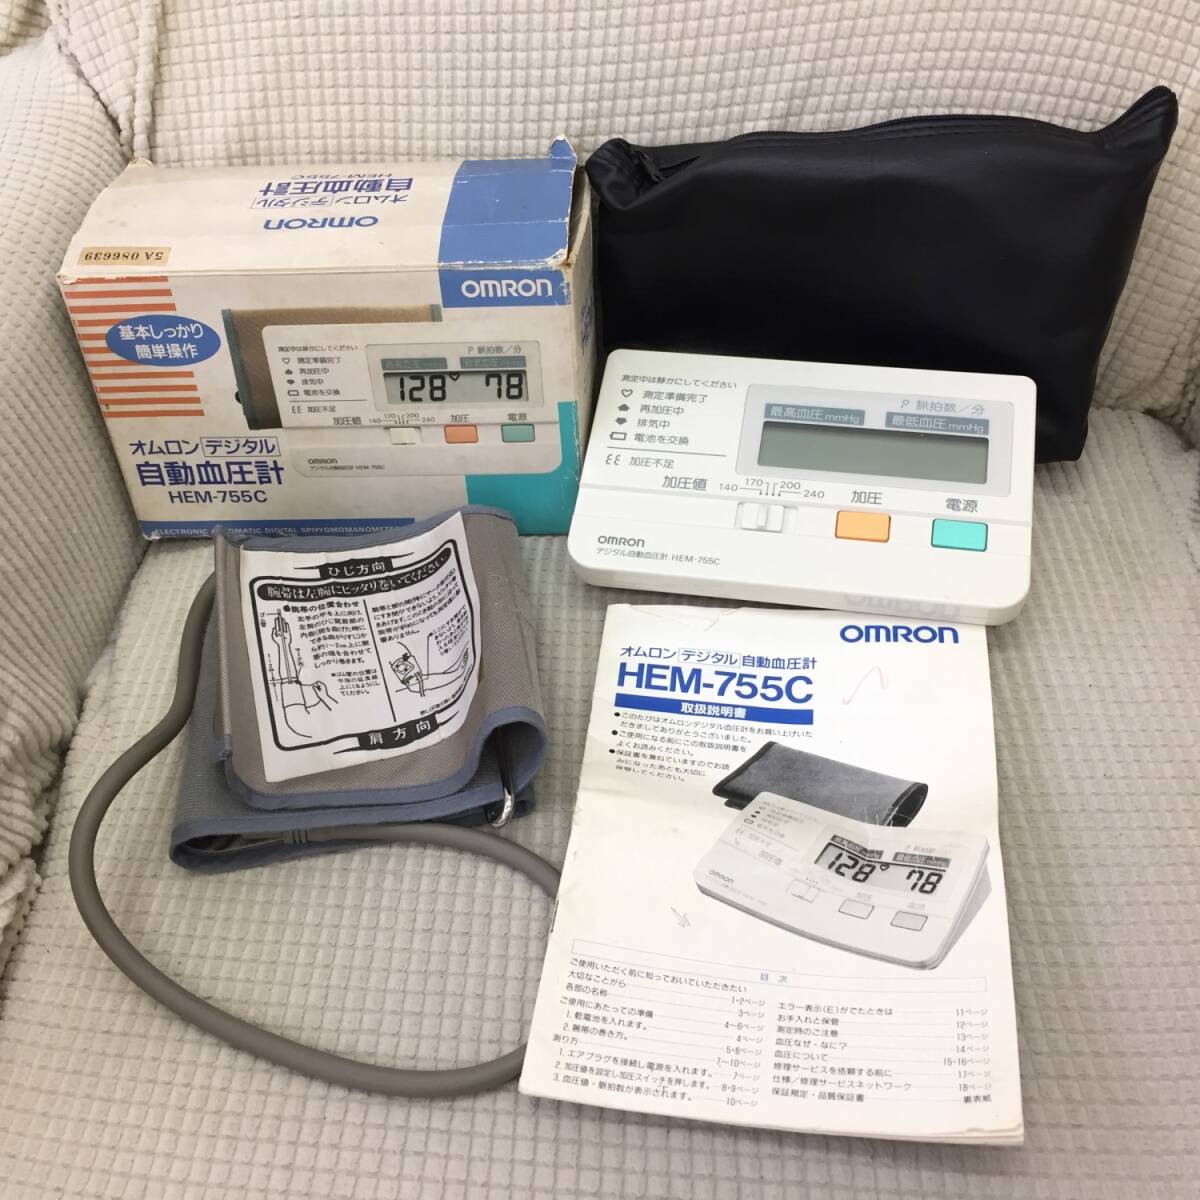 [測定器] 血圧計「オムロン デジタル 自動血圧計 HEM-755C」簡易動作確認 健康器具 健康用品 omron _画像1